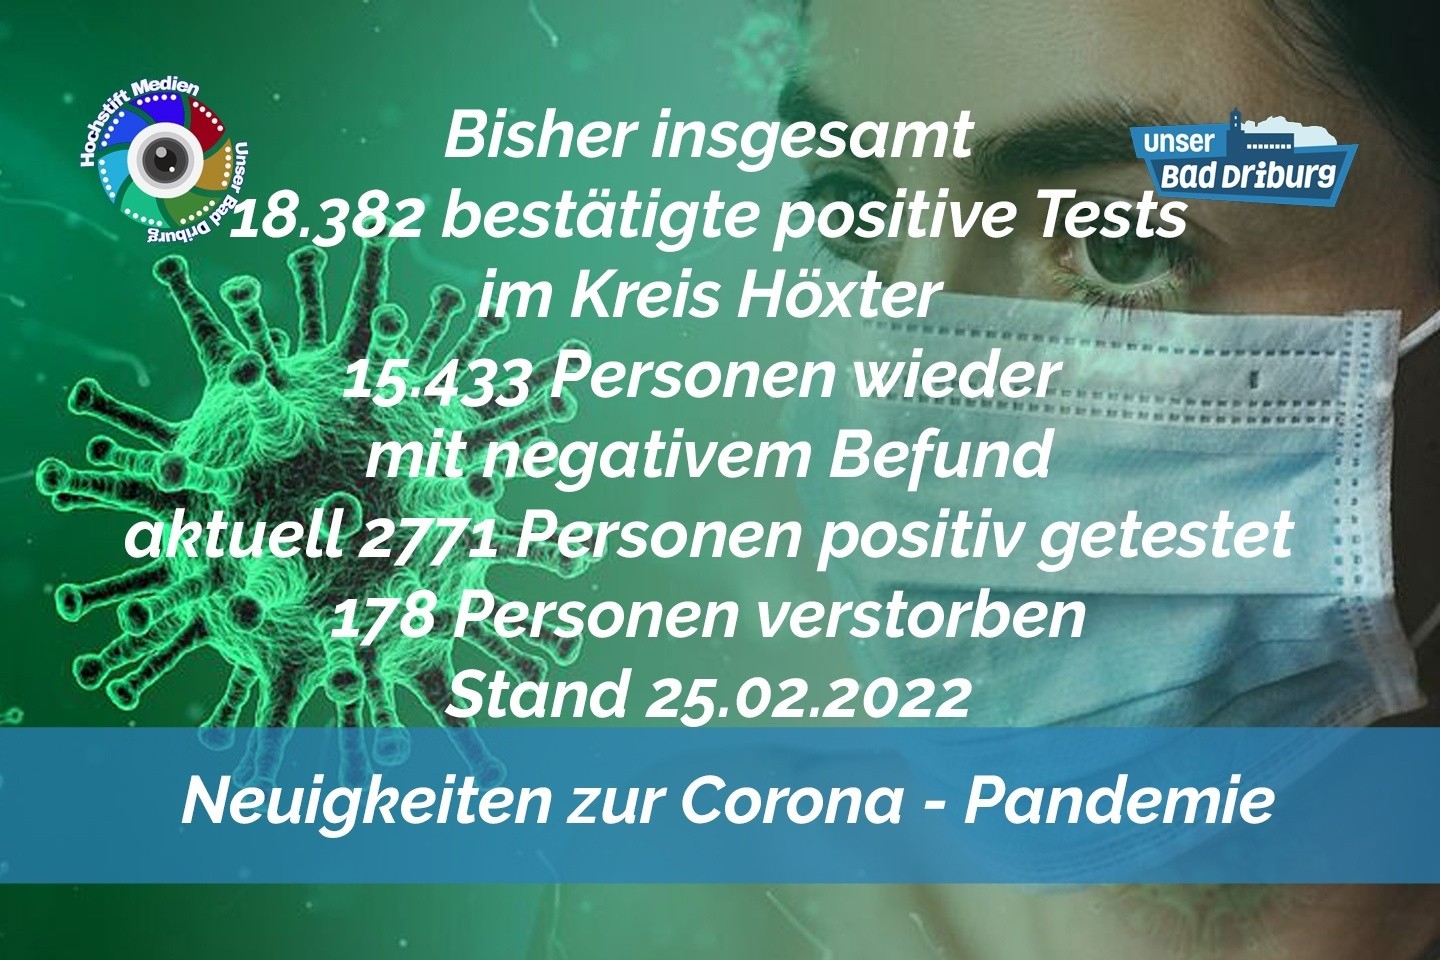 Update 25. Februar 2022: 372 weitere amtlich positive Tests im Kreis Höxter